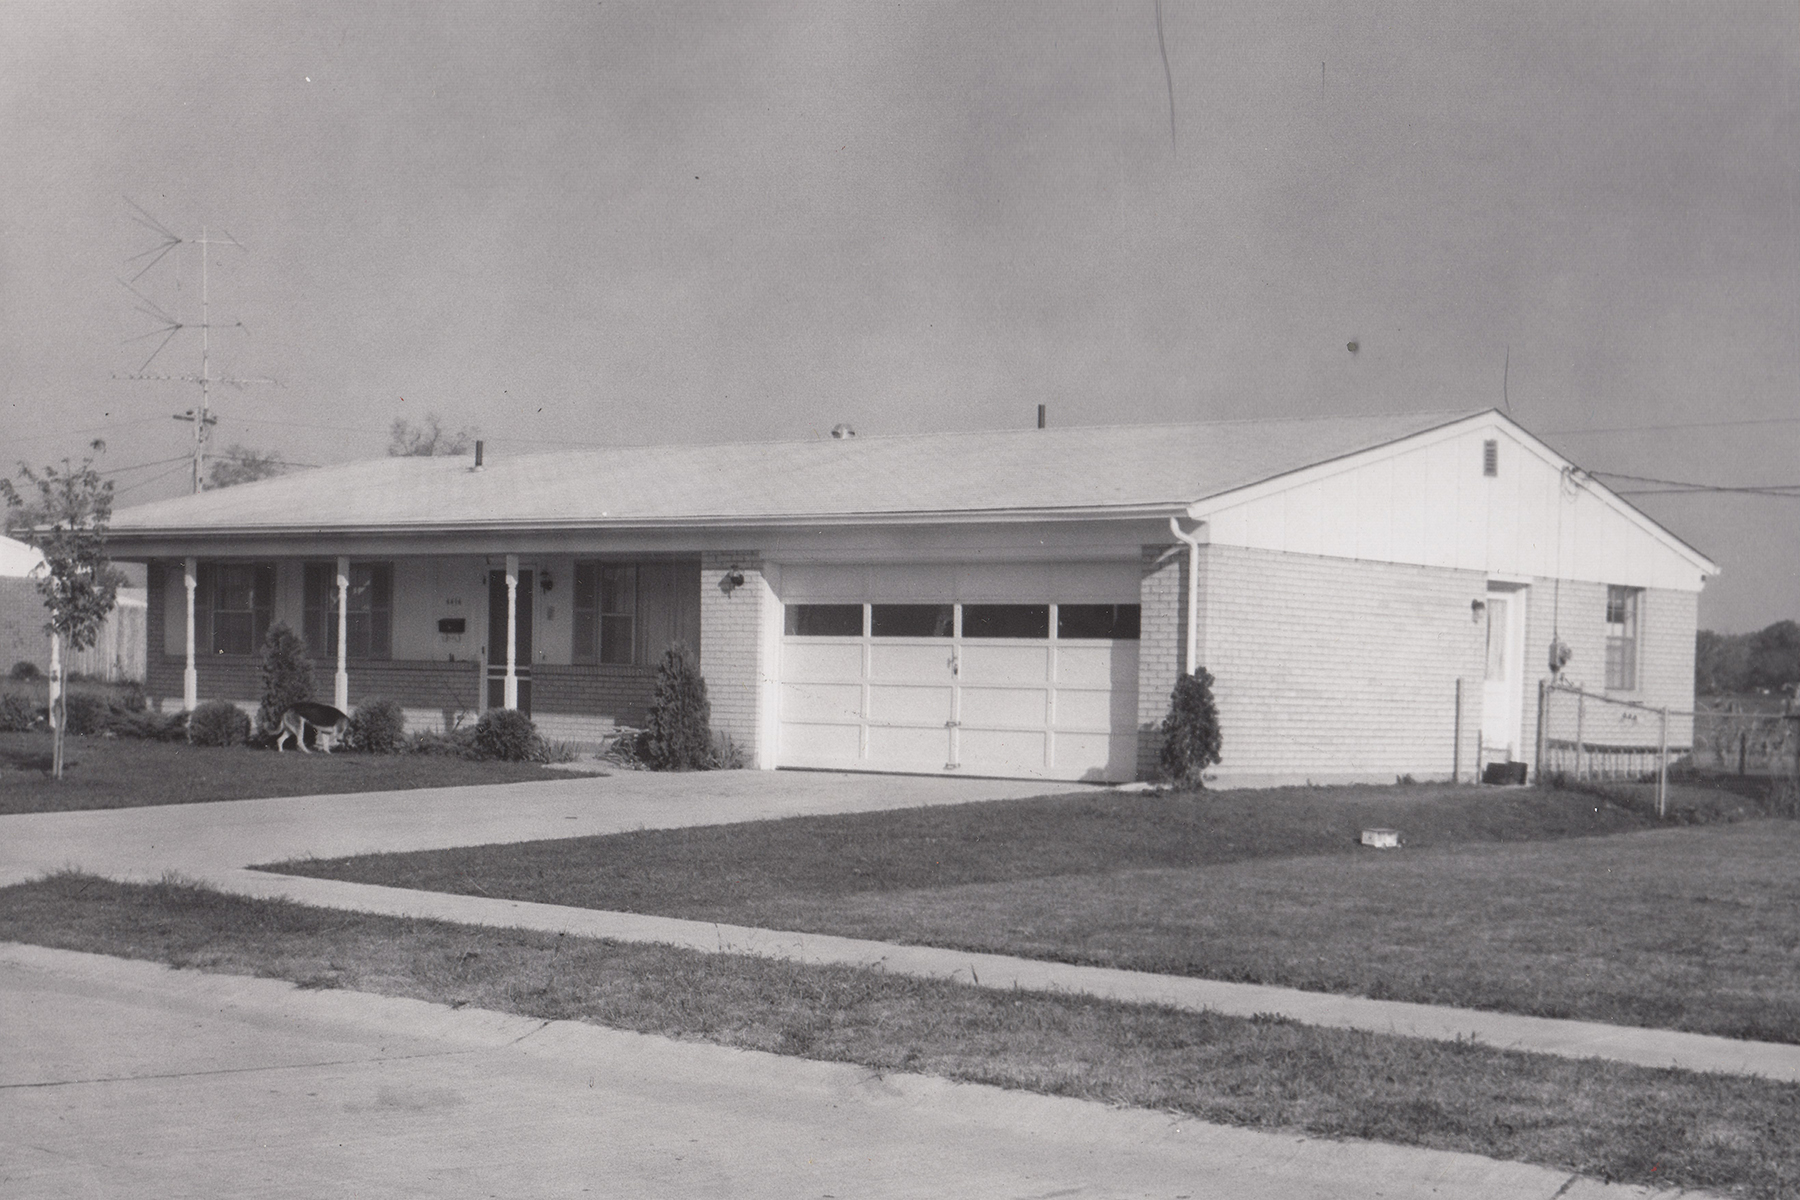 Home of George Obrist, Jr., Bellbrook